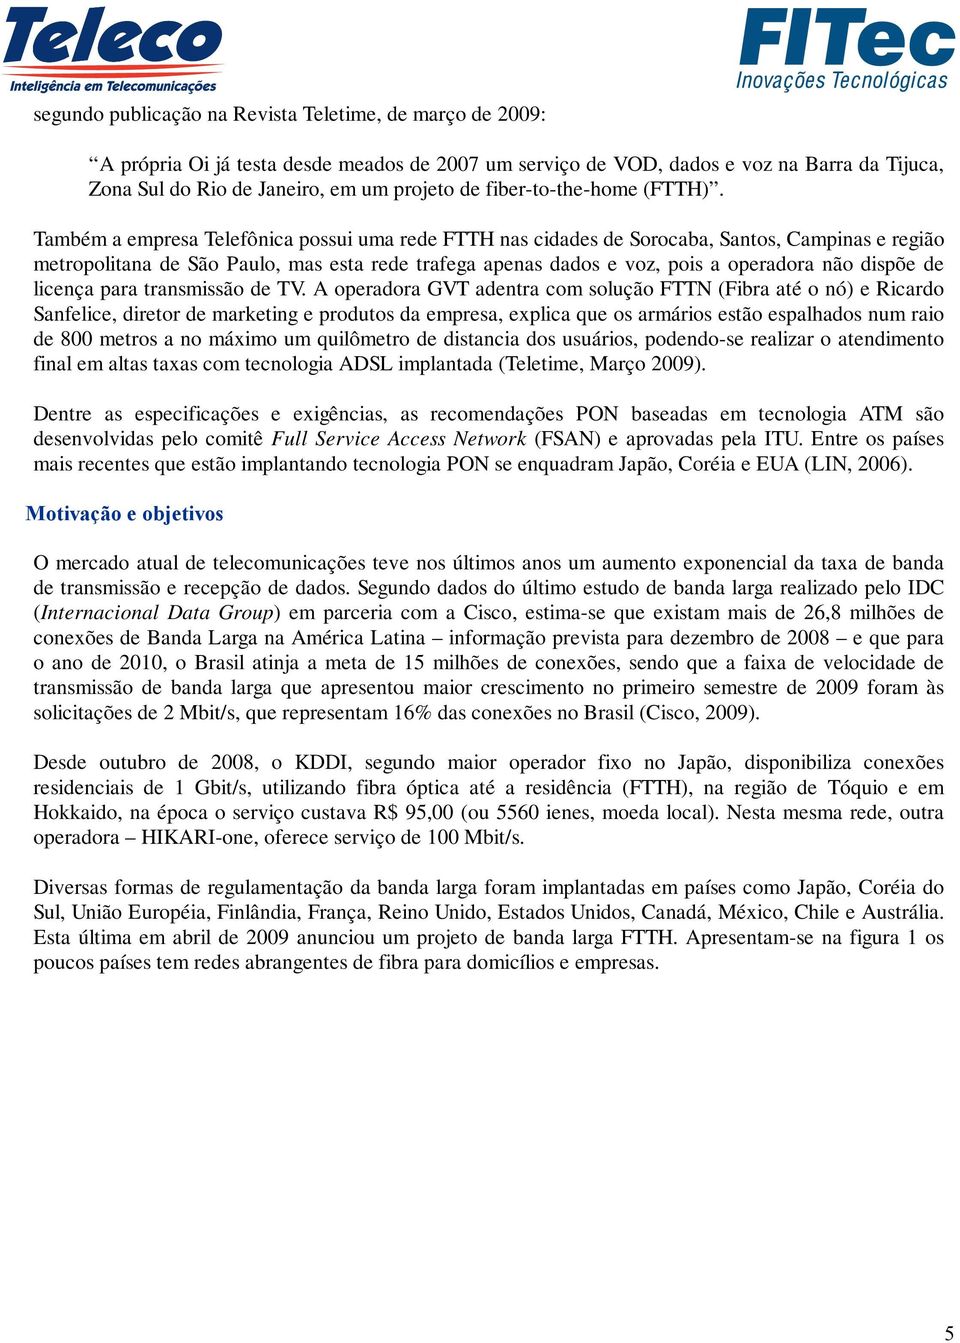 Também a empresa Telefônica possui uma rede FTTH nas cidades de Sorocaba, Santos, Campinas e região metropolitana de São Paulo, mas esta rede trafega apenas dados e voz, pois a operadora não dispõe